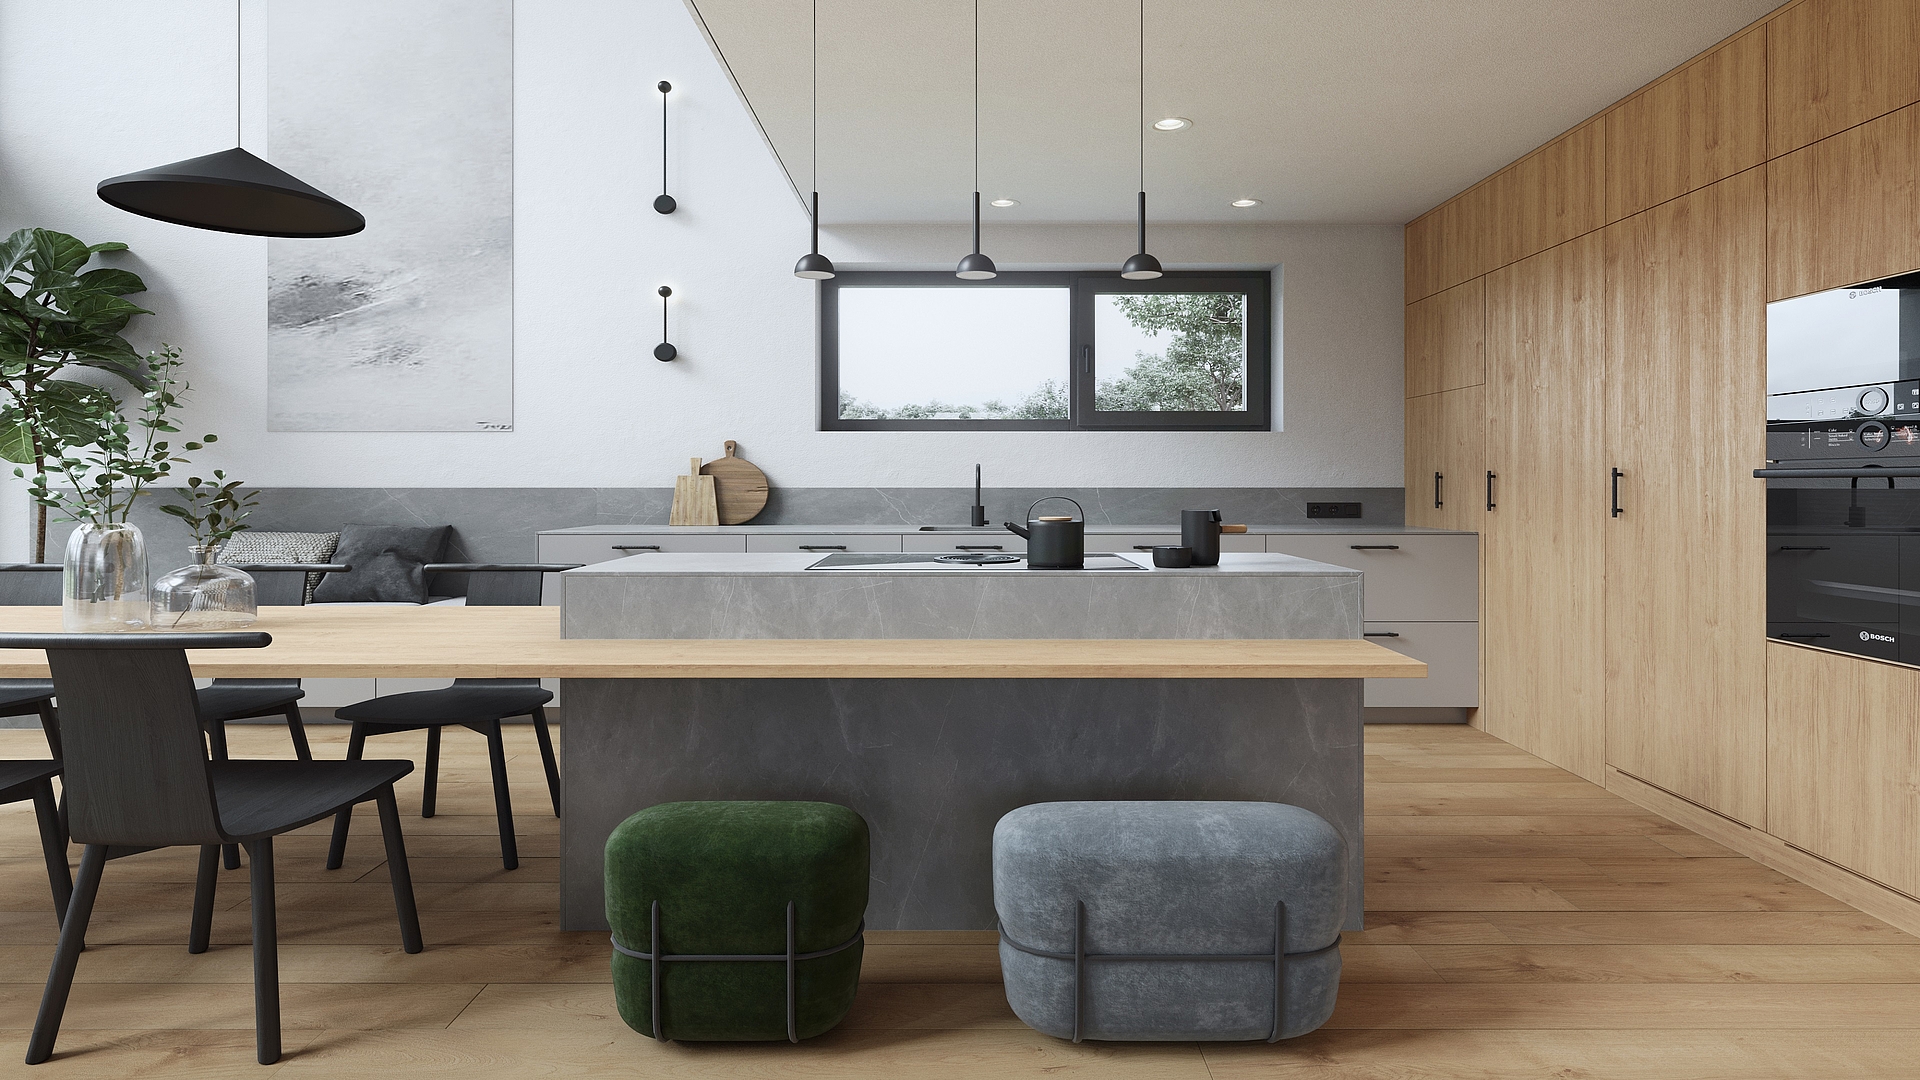 Open plan living in the kitchen – BORA kitchen design